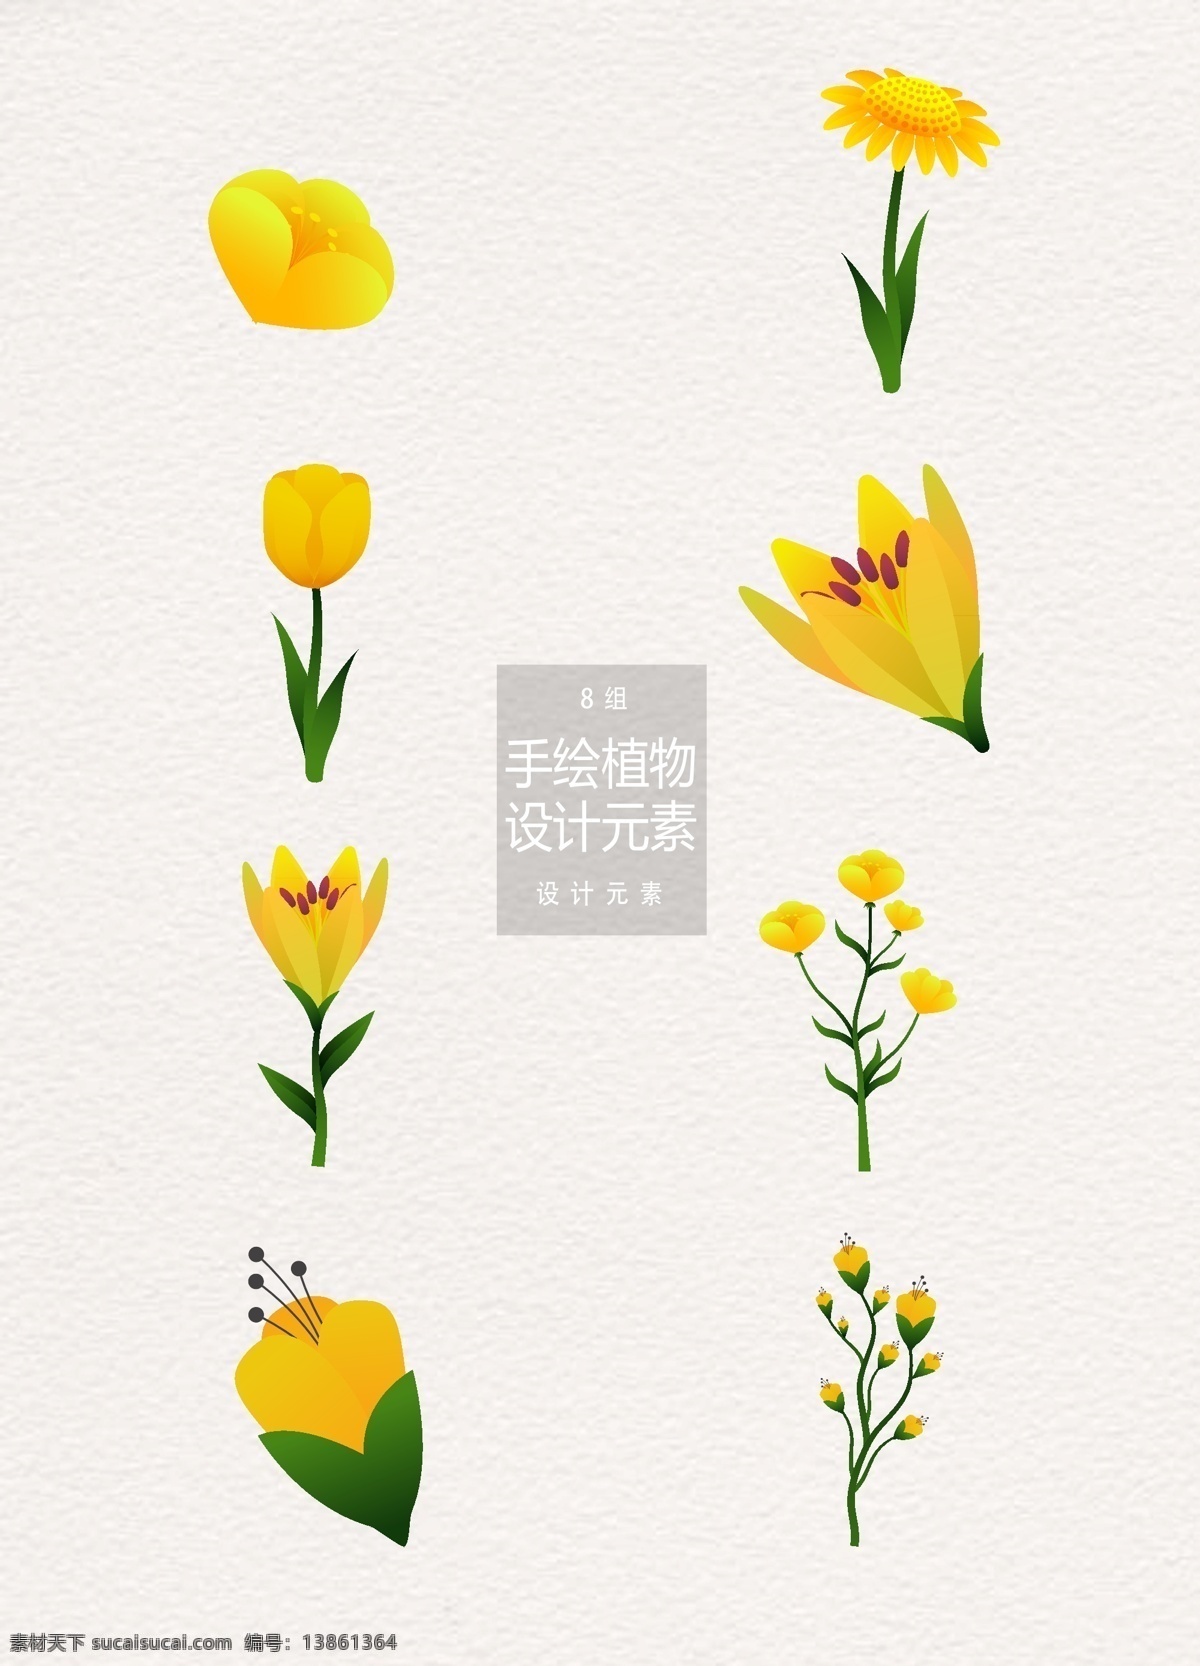 黄色 花卉 装饰设计 元素 手绘花卉 郁金香 设计元素 植物 黄色花卉 花卉花朵 装饰图案